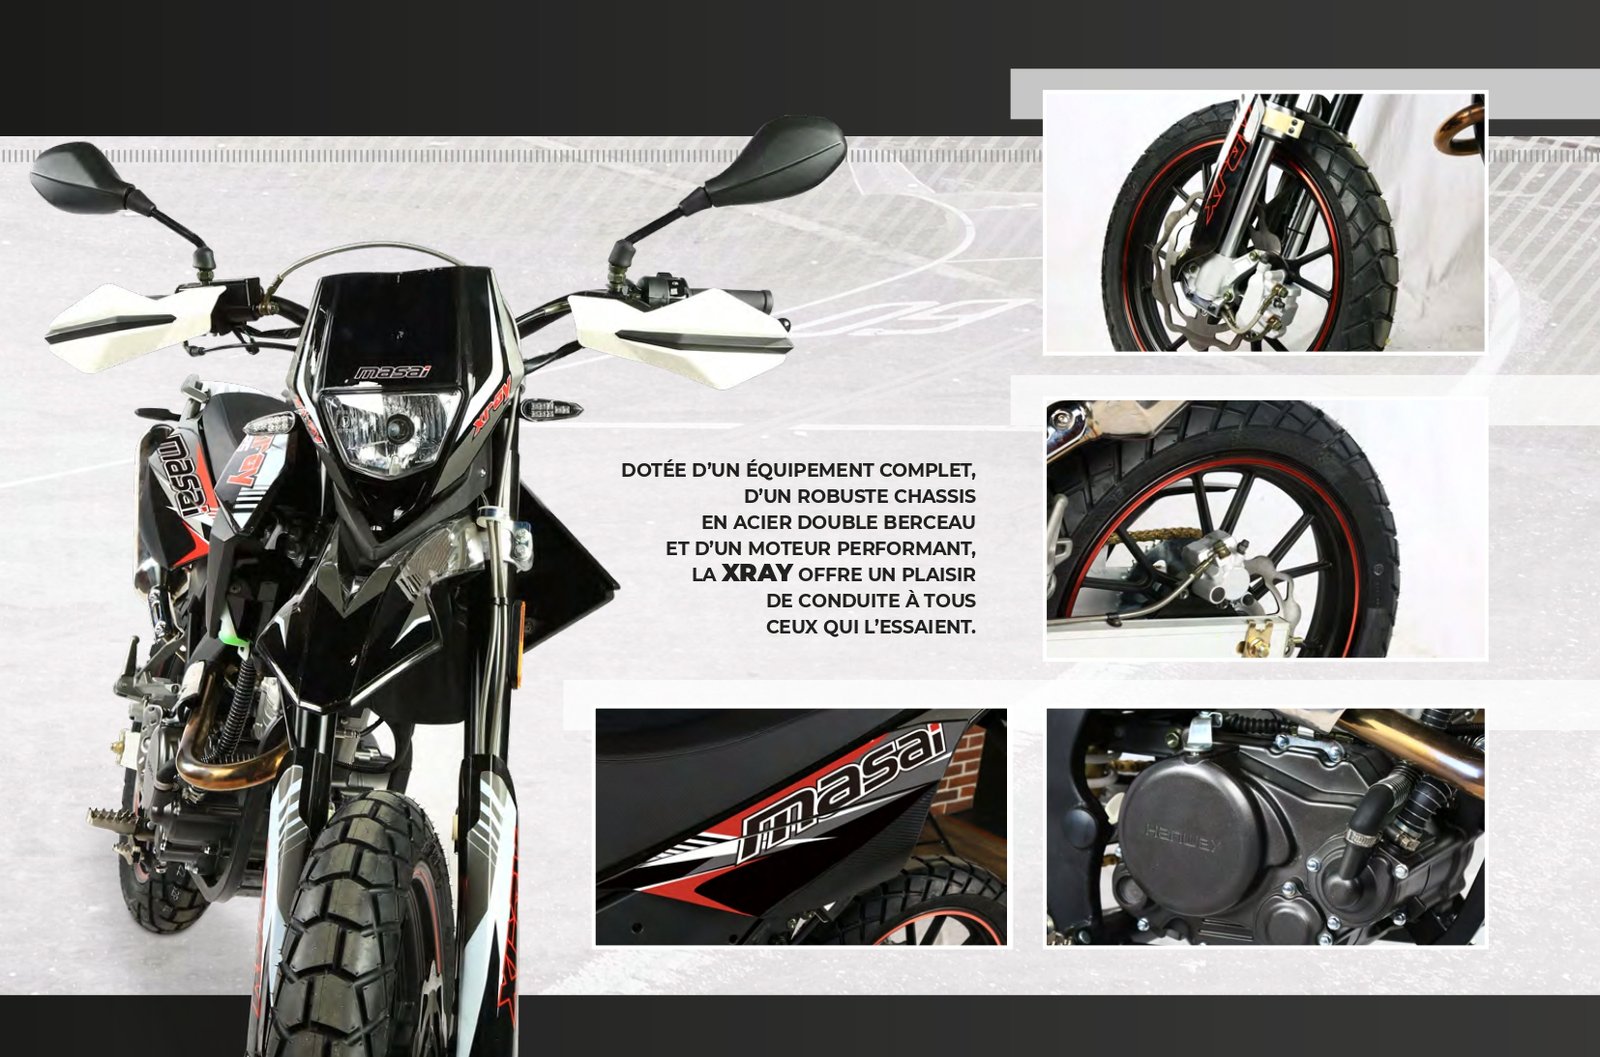 La moto maisai X-ray 125cc Supermotard un choix incomparable à bon prix !